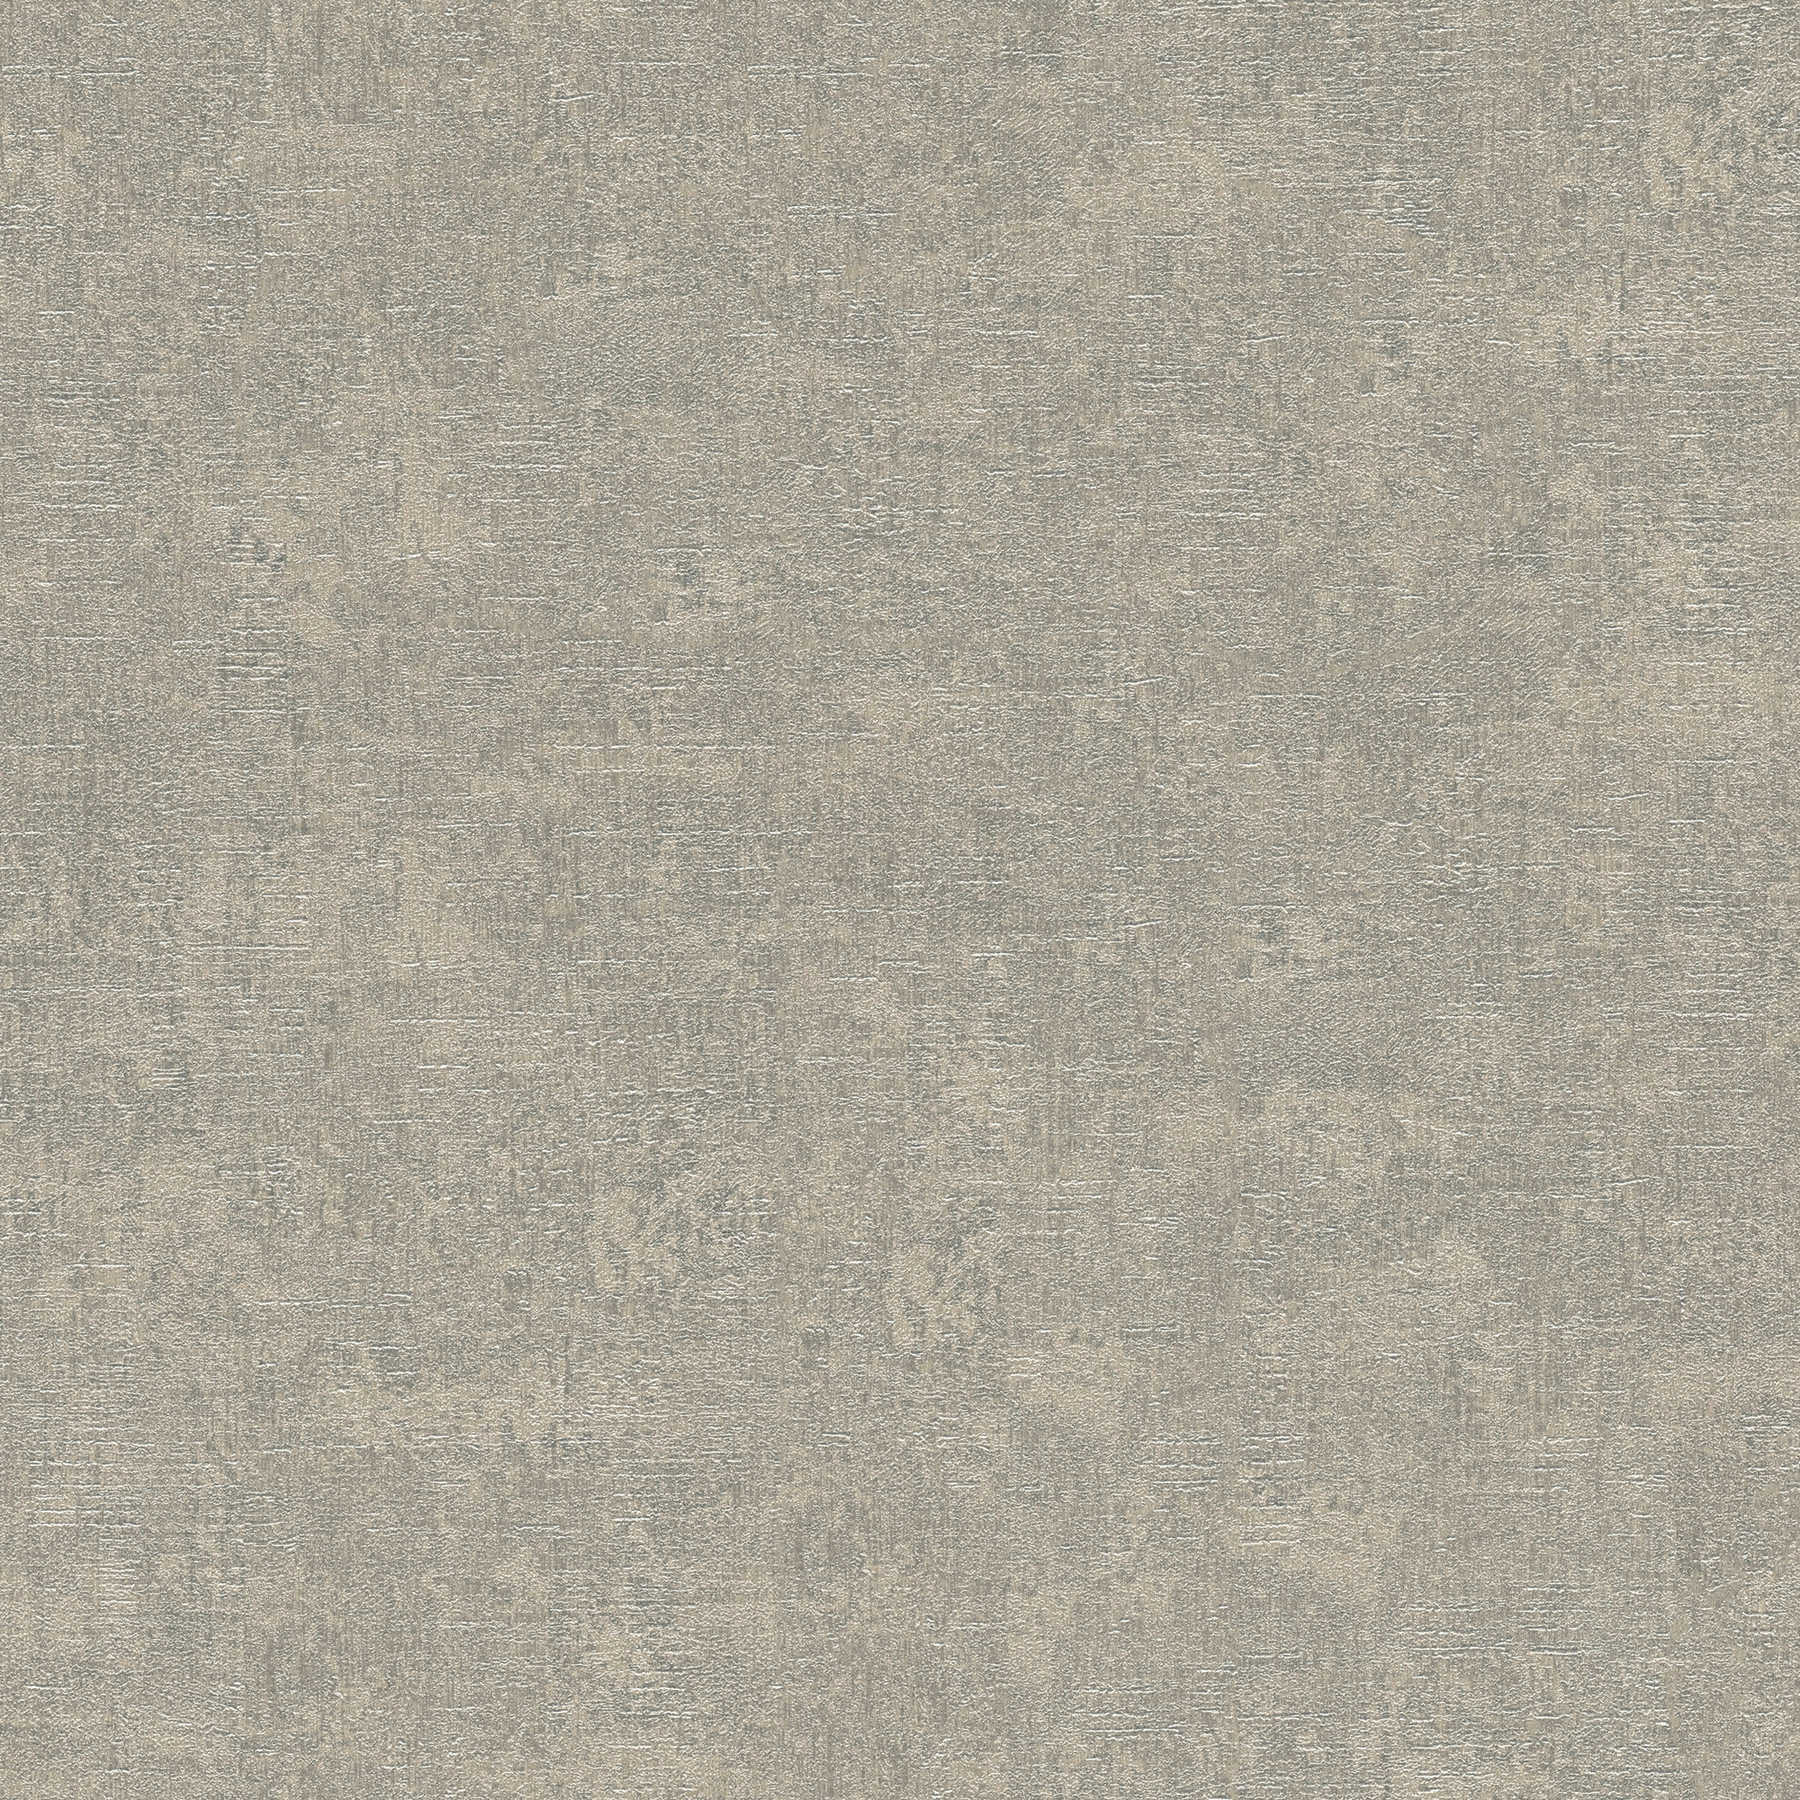 Carta da parati a moduli grigio argento con effetto intonaco di cemento - beige, grigio
